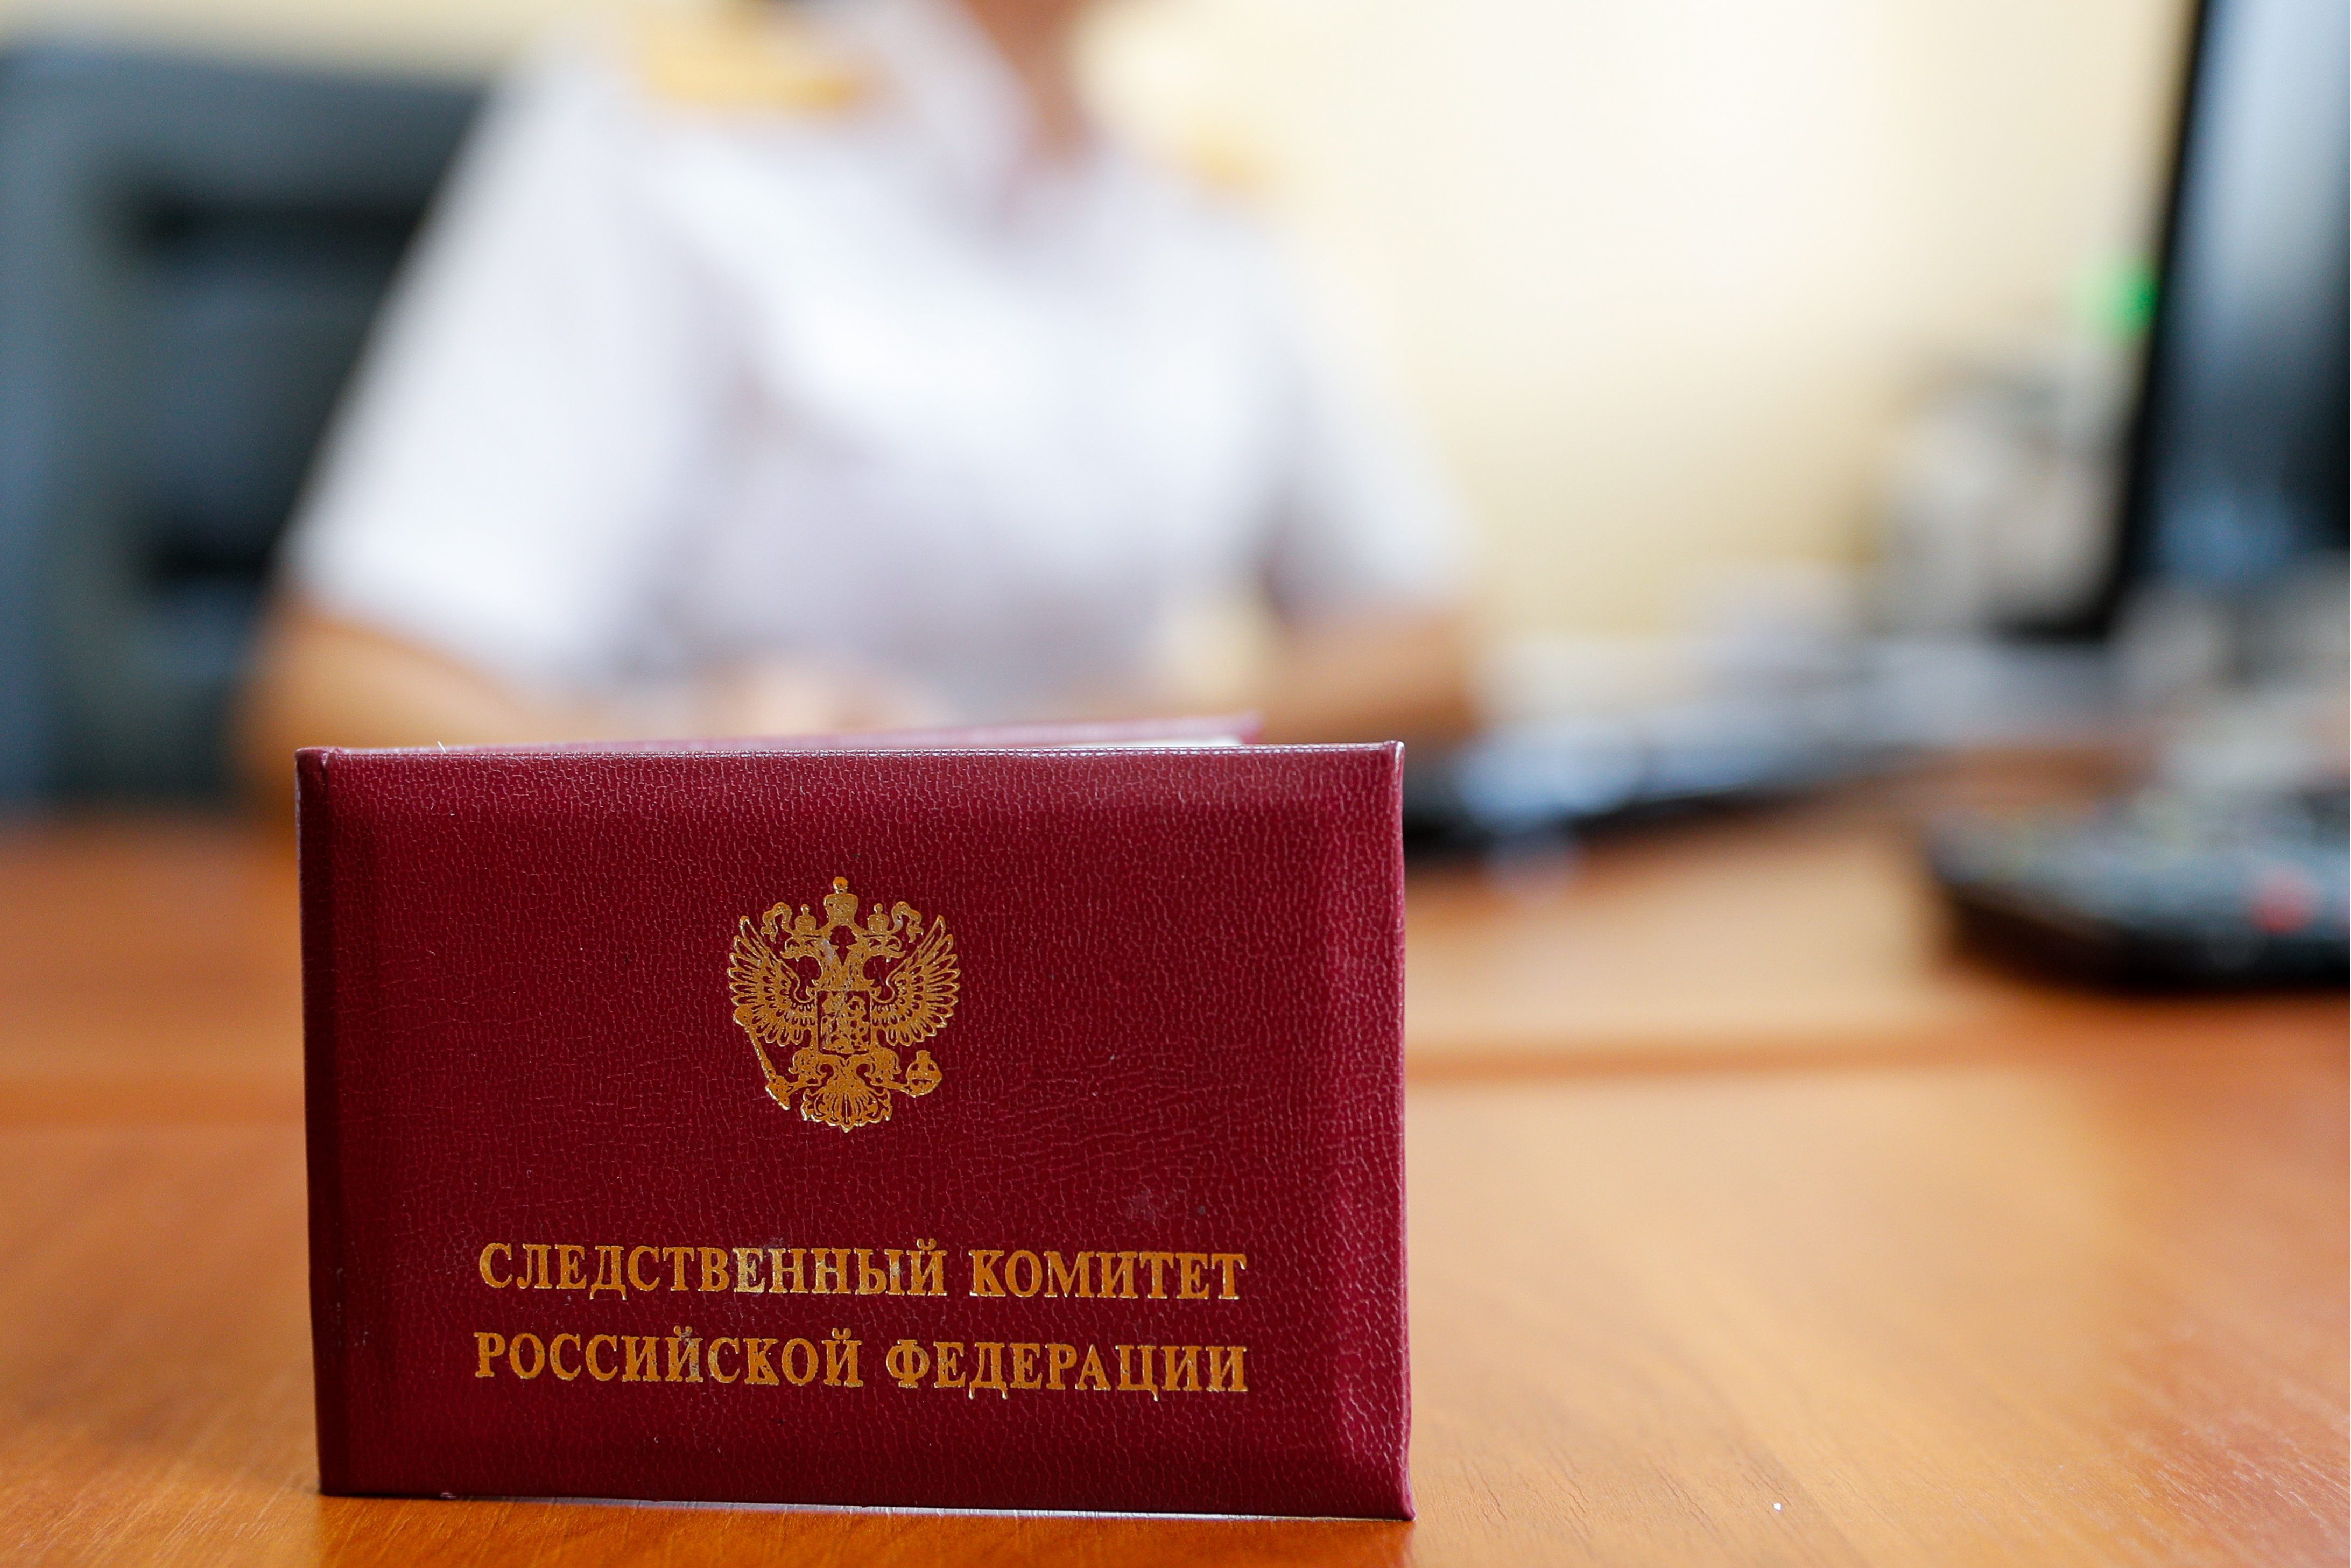 В Череповце осудят 19-летнюю девушку, предоставившую свой паспорт для внесения в ЕГРЮЛ сведений о подставном руководителе